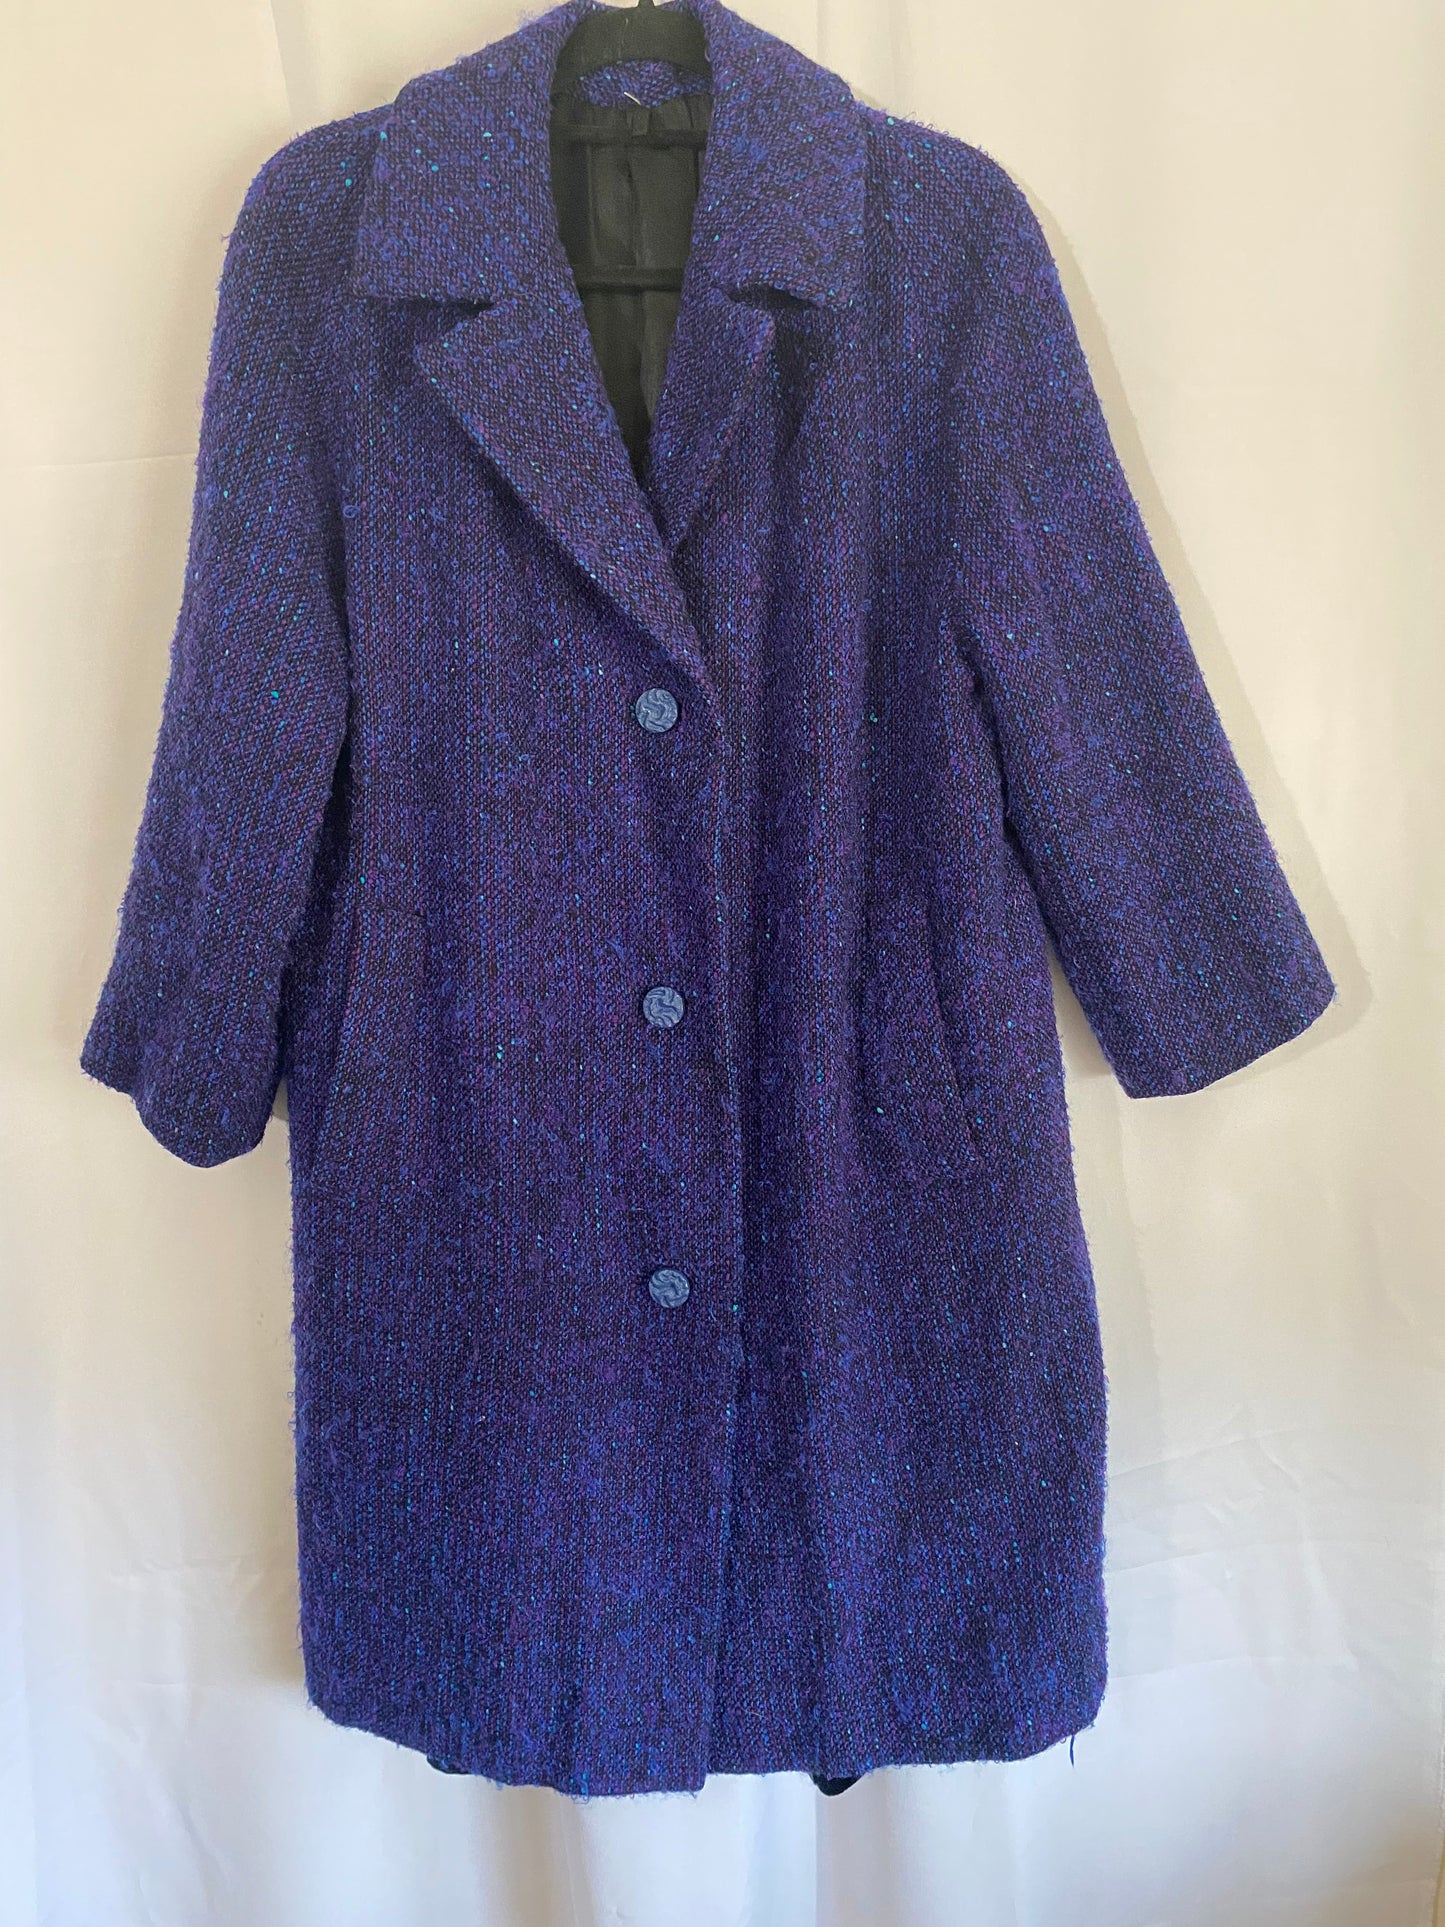 Vibrant Purple/Blue Tweed Jacket